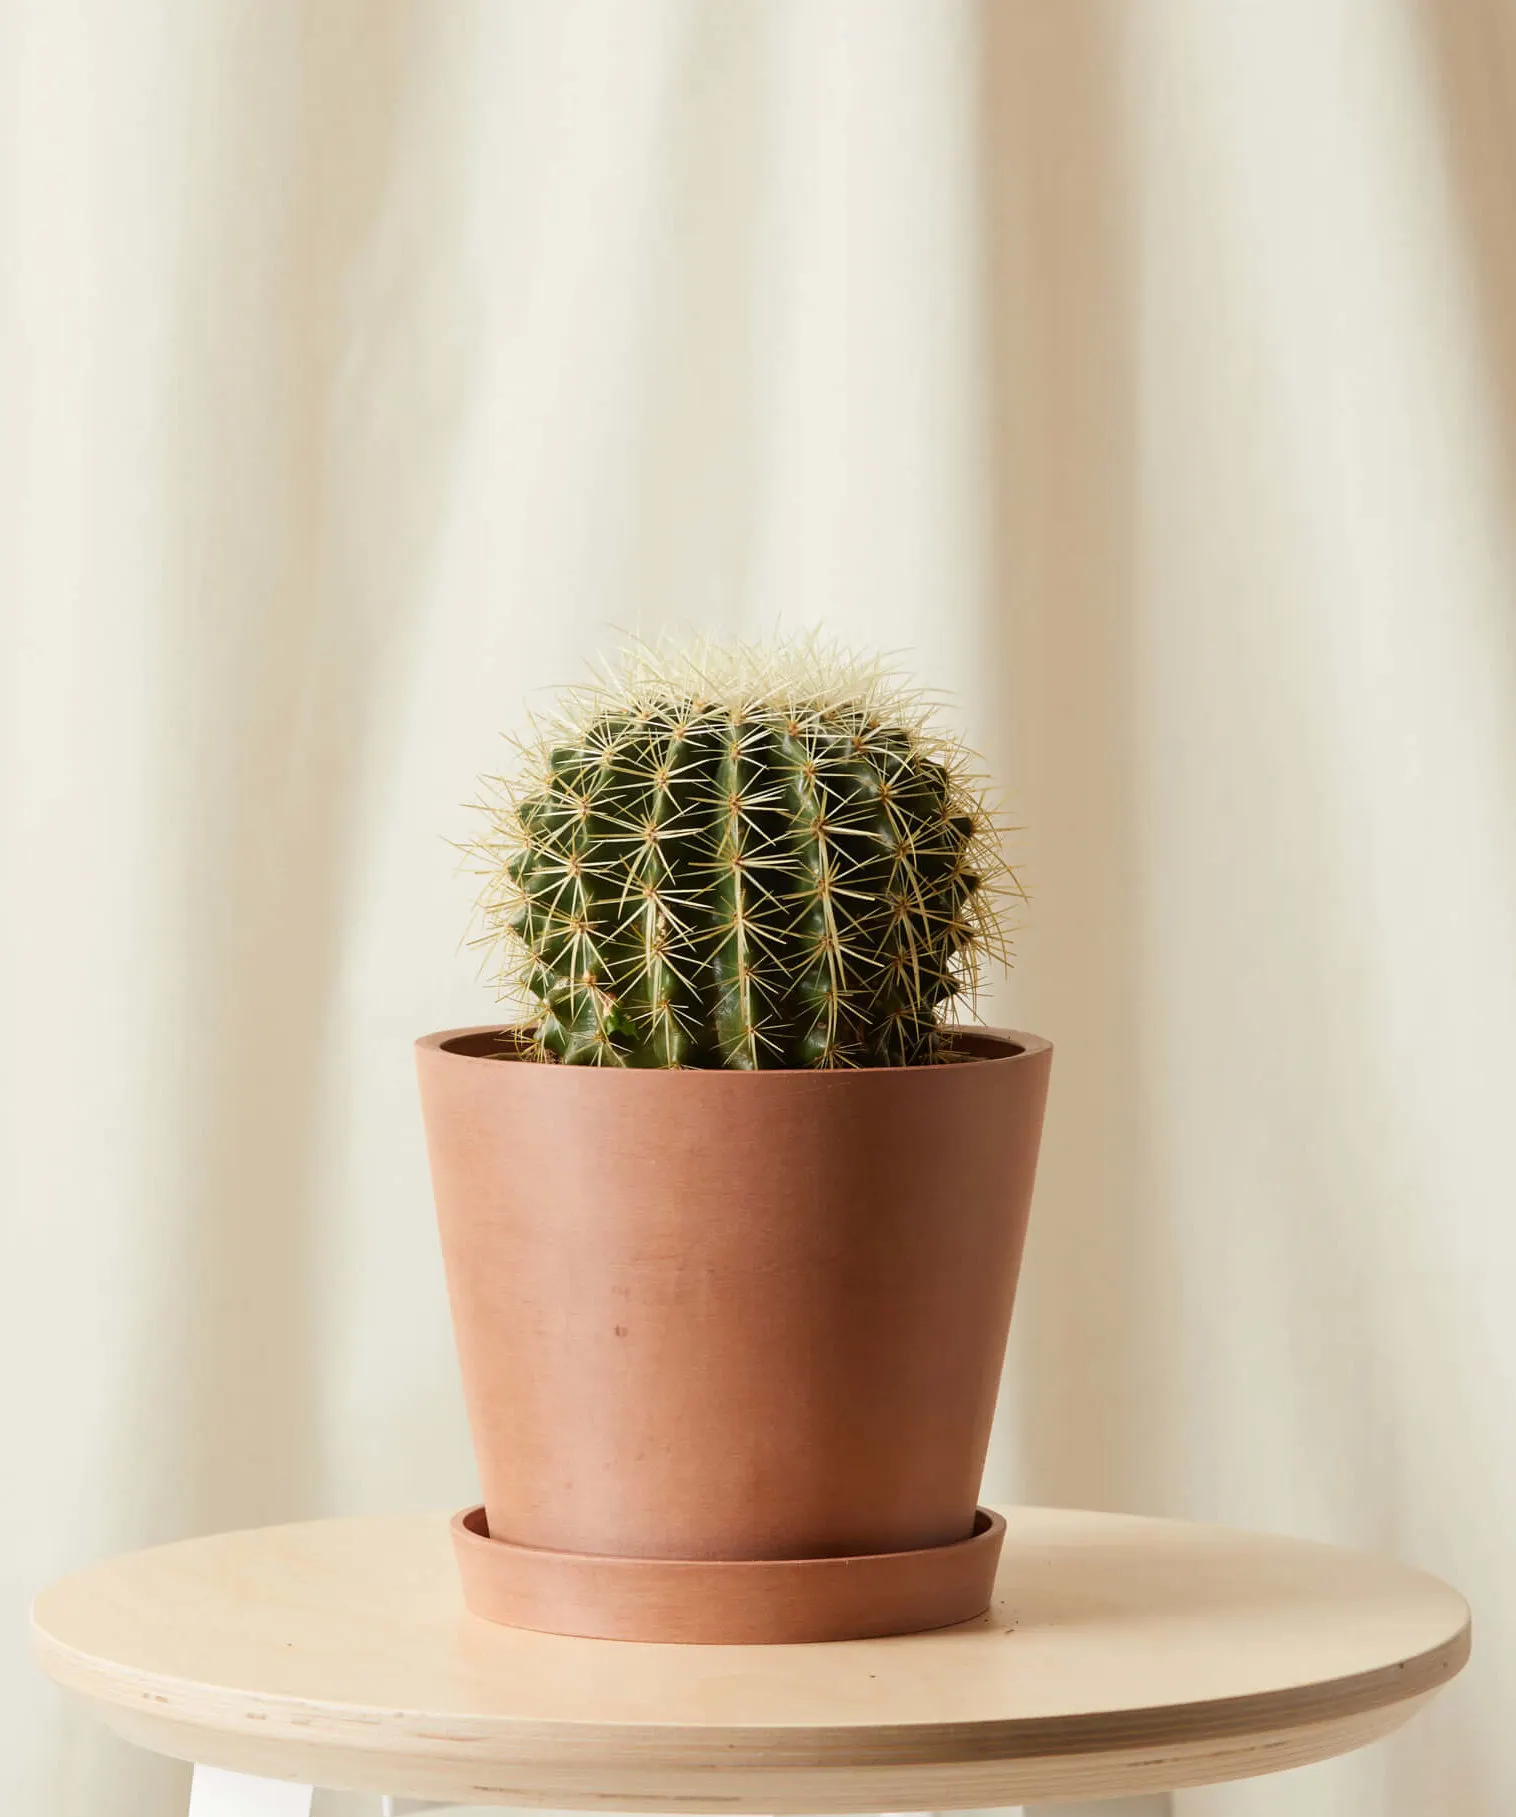 Golden Barrel Cactus in pot